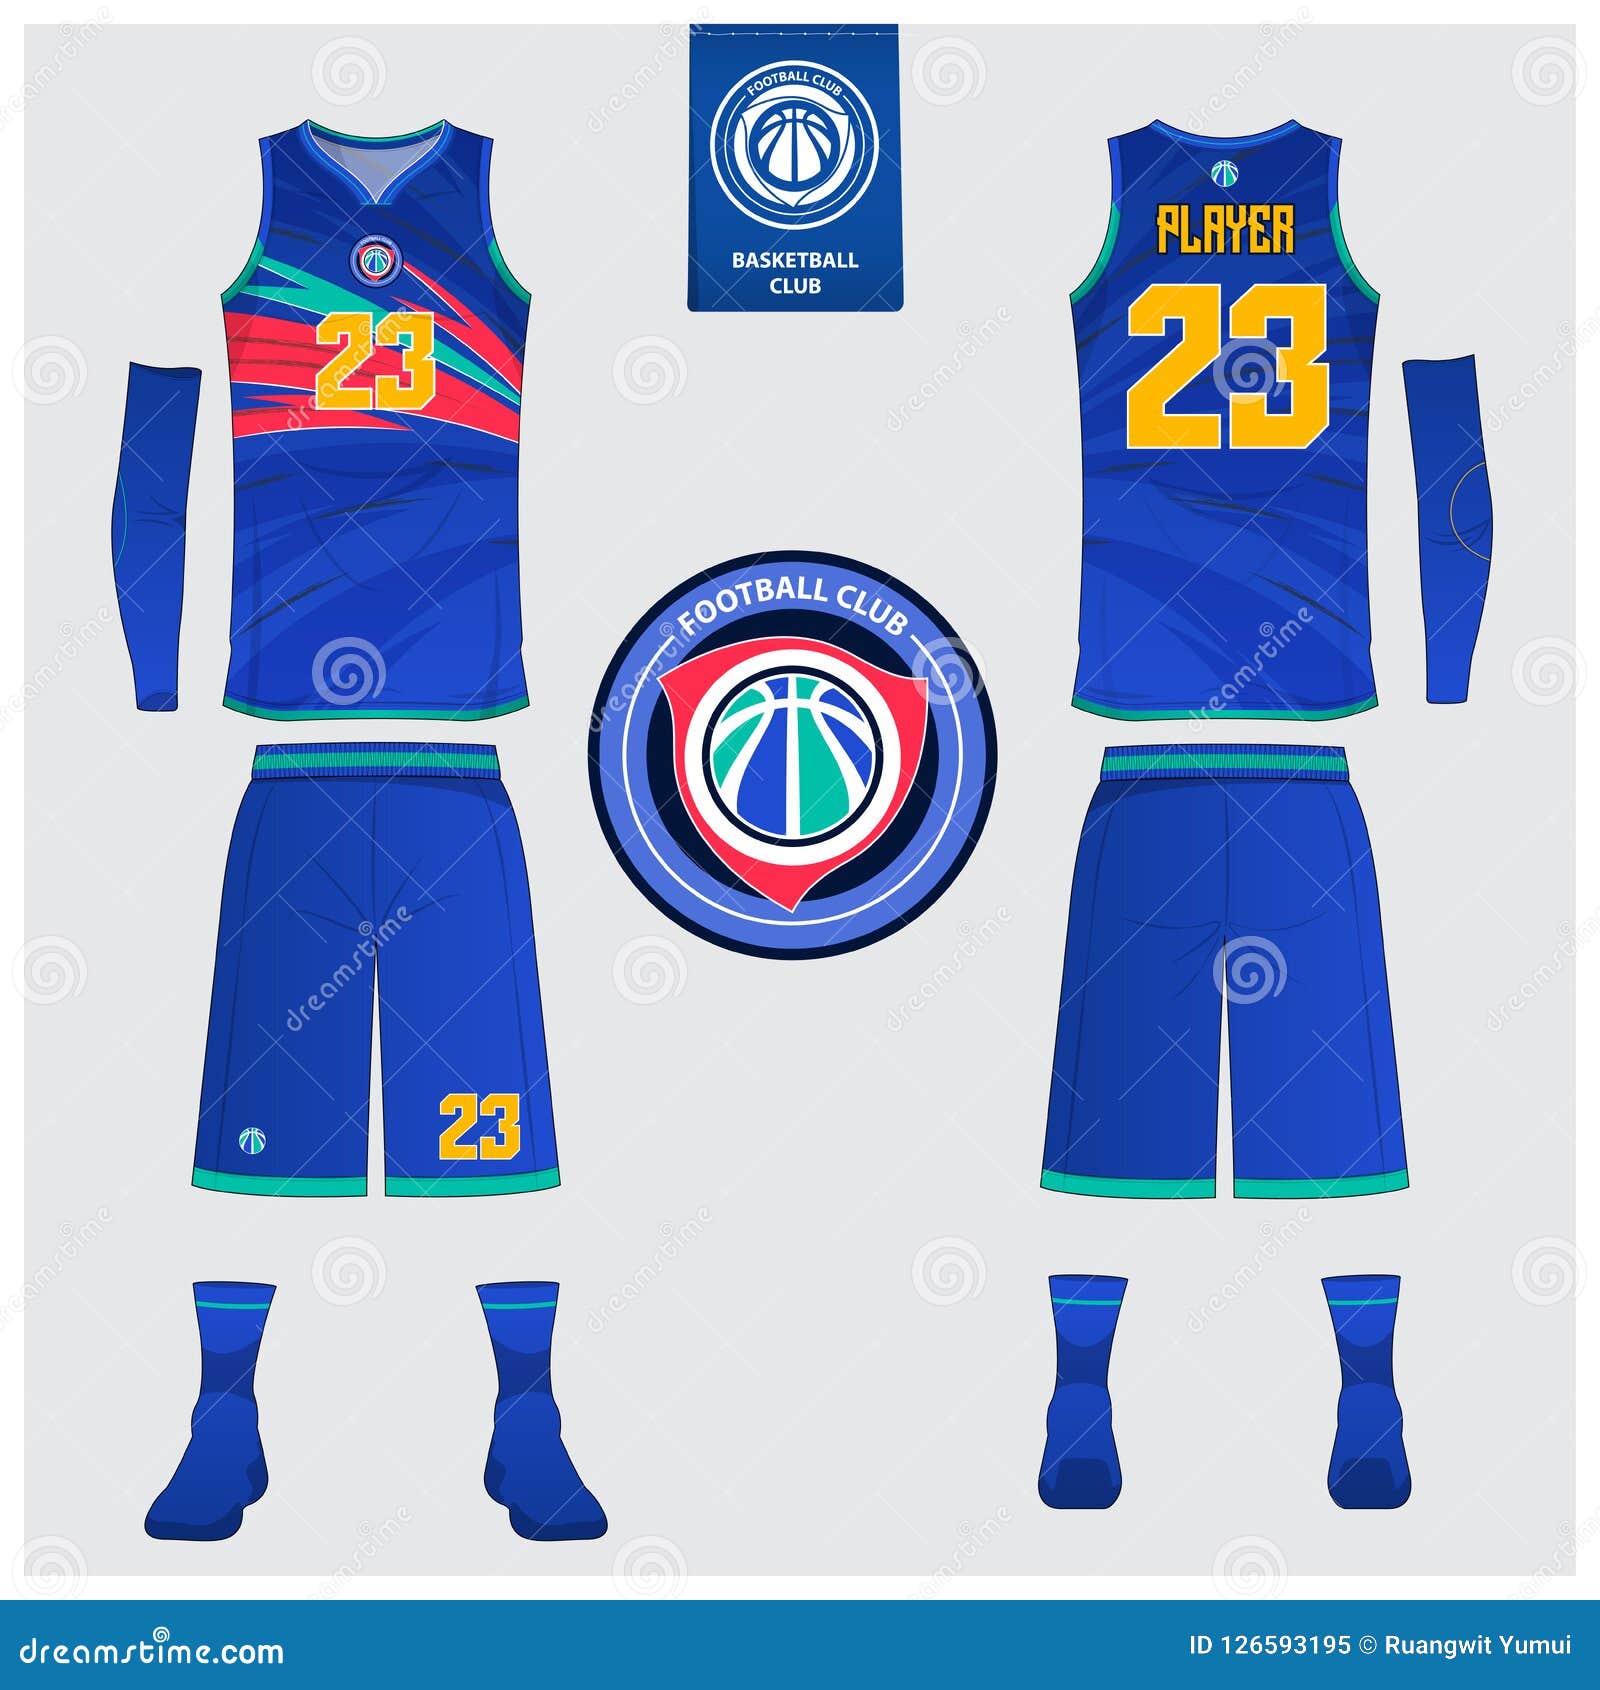 best basketball jersey design